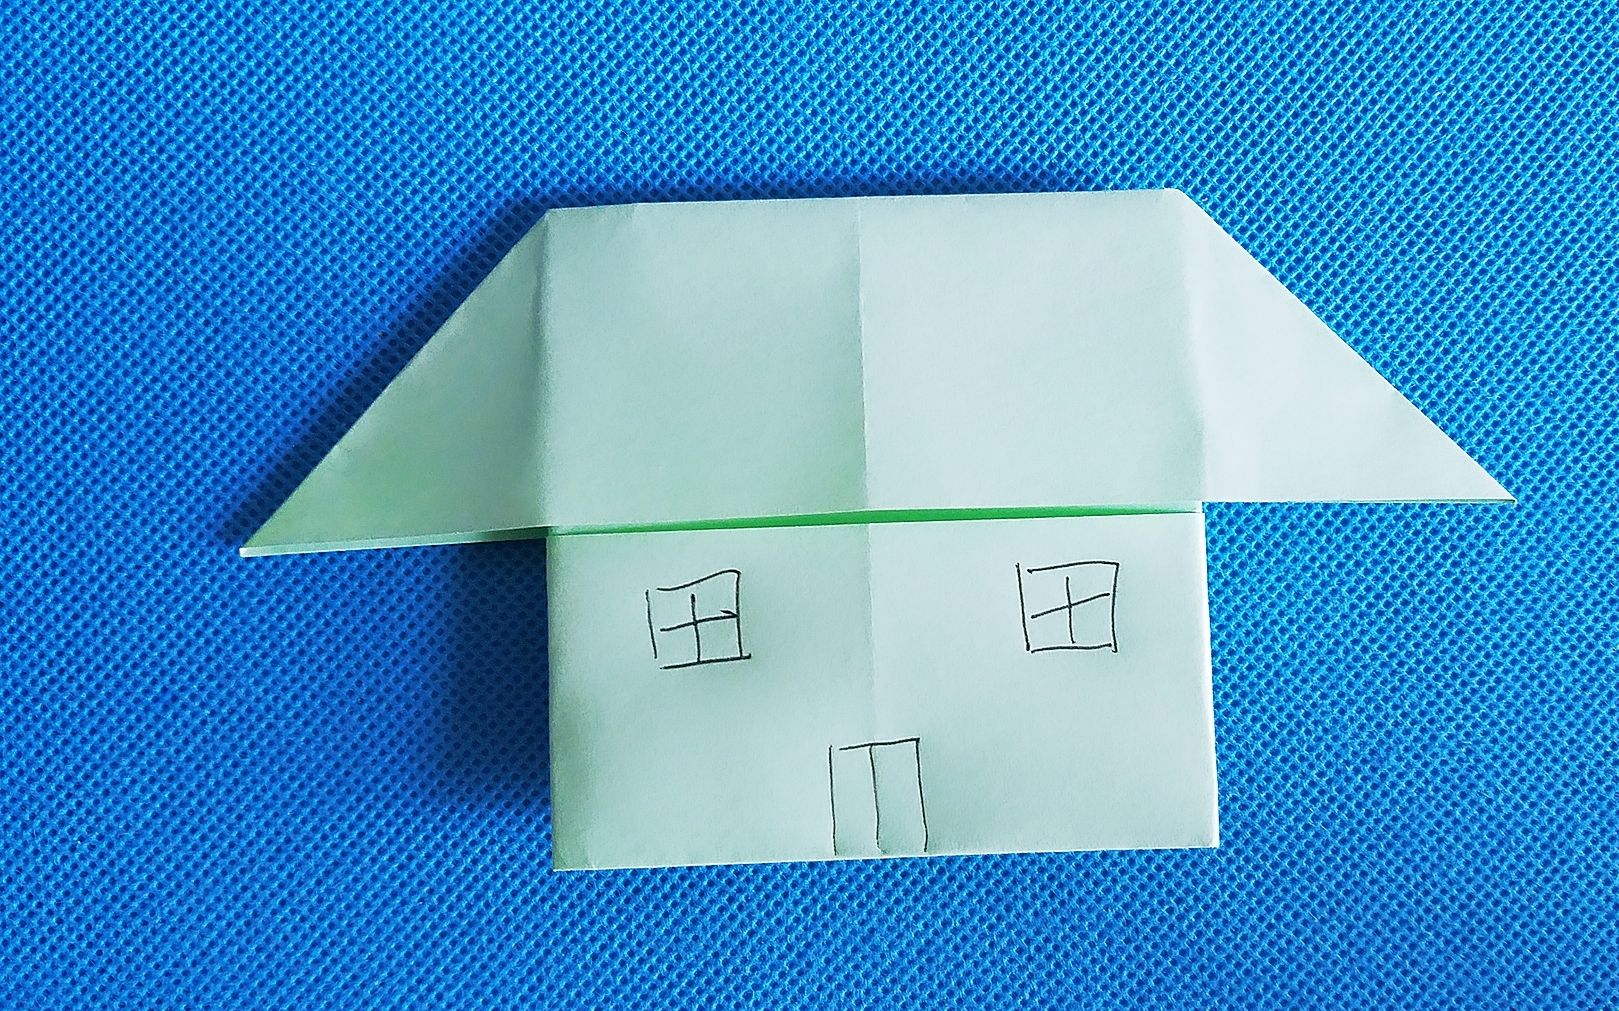 【折纸教程】折纸王子:小房子折纸大全教程讲解详细一看就会